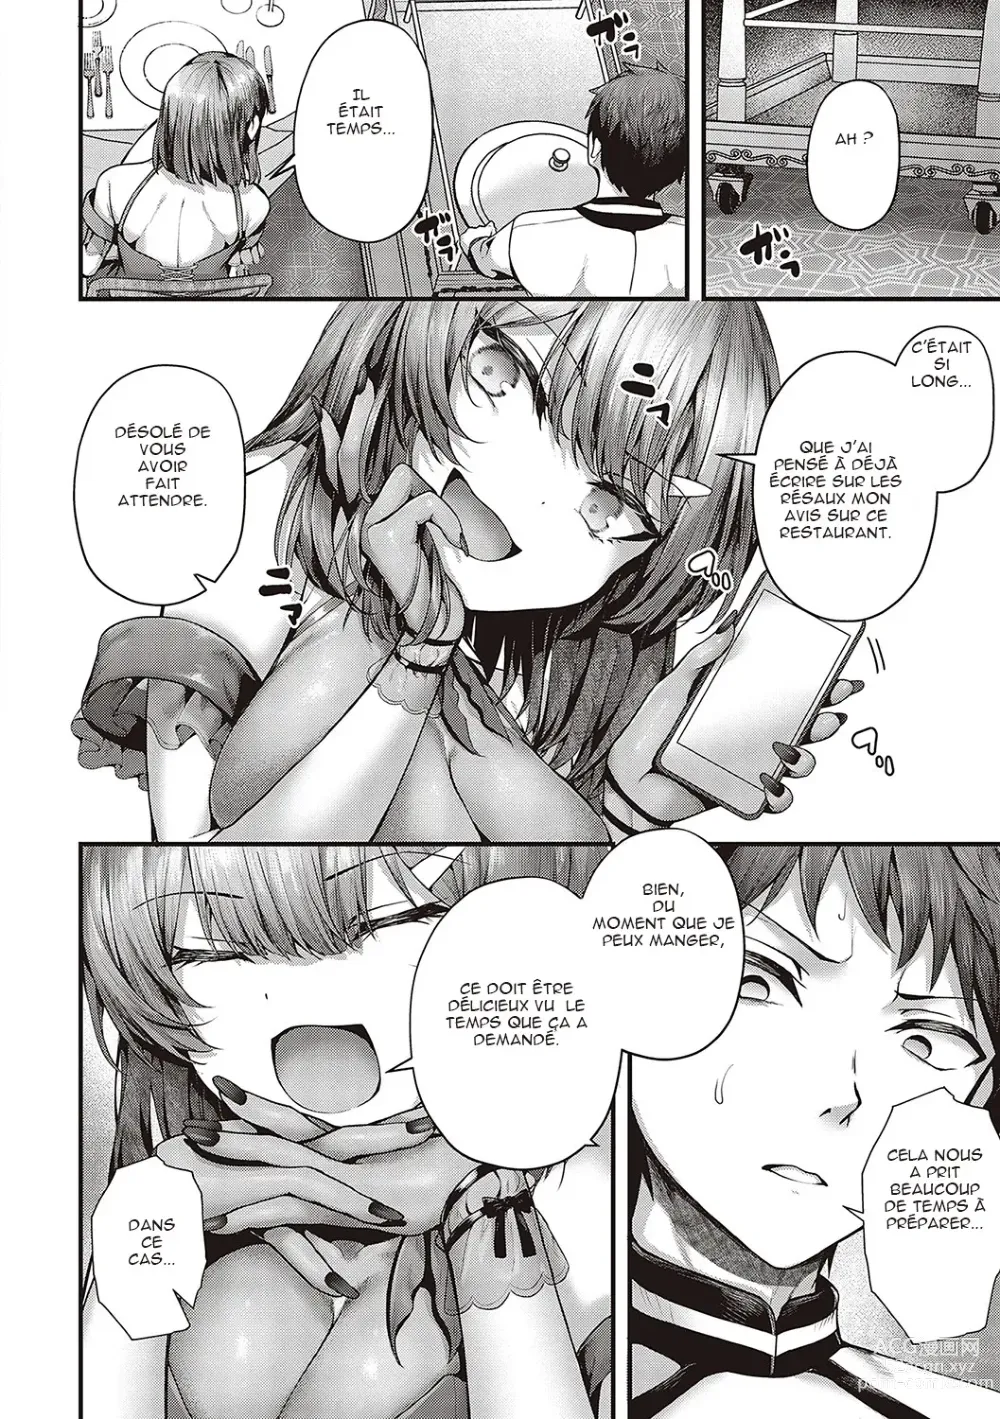 Page 4 of manga Supreme Chin Taste